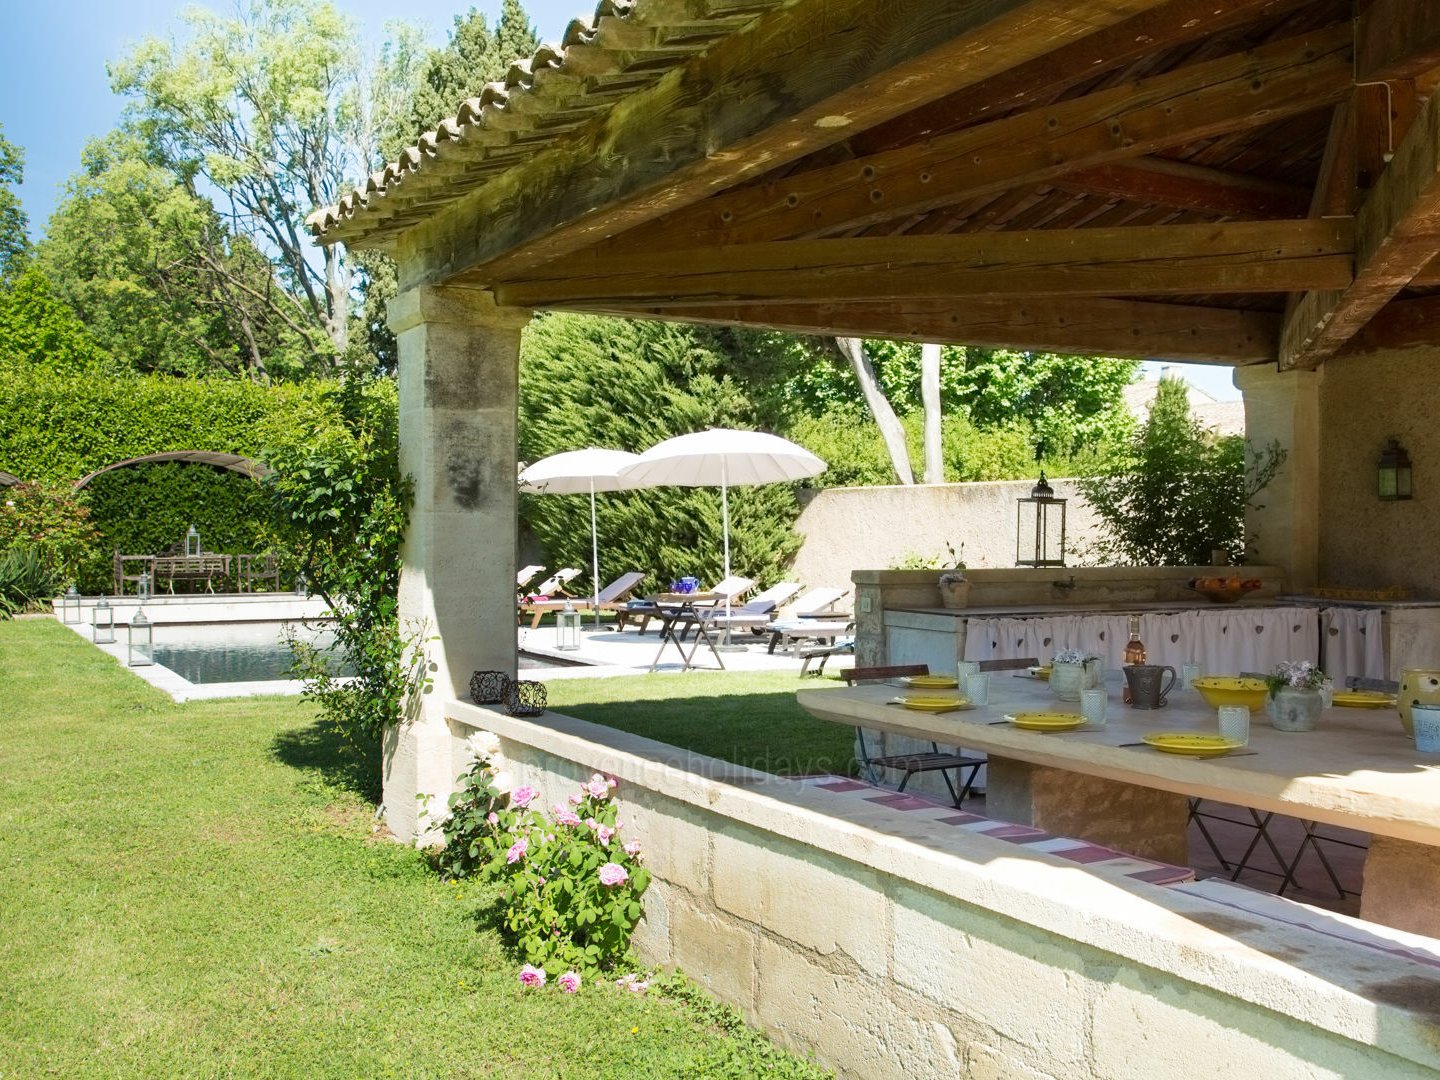 13 - Le Domaine des Cyprès: Villa: Exterior - Le Domaine des Cyprès: Outdoor kitchen